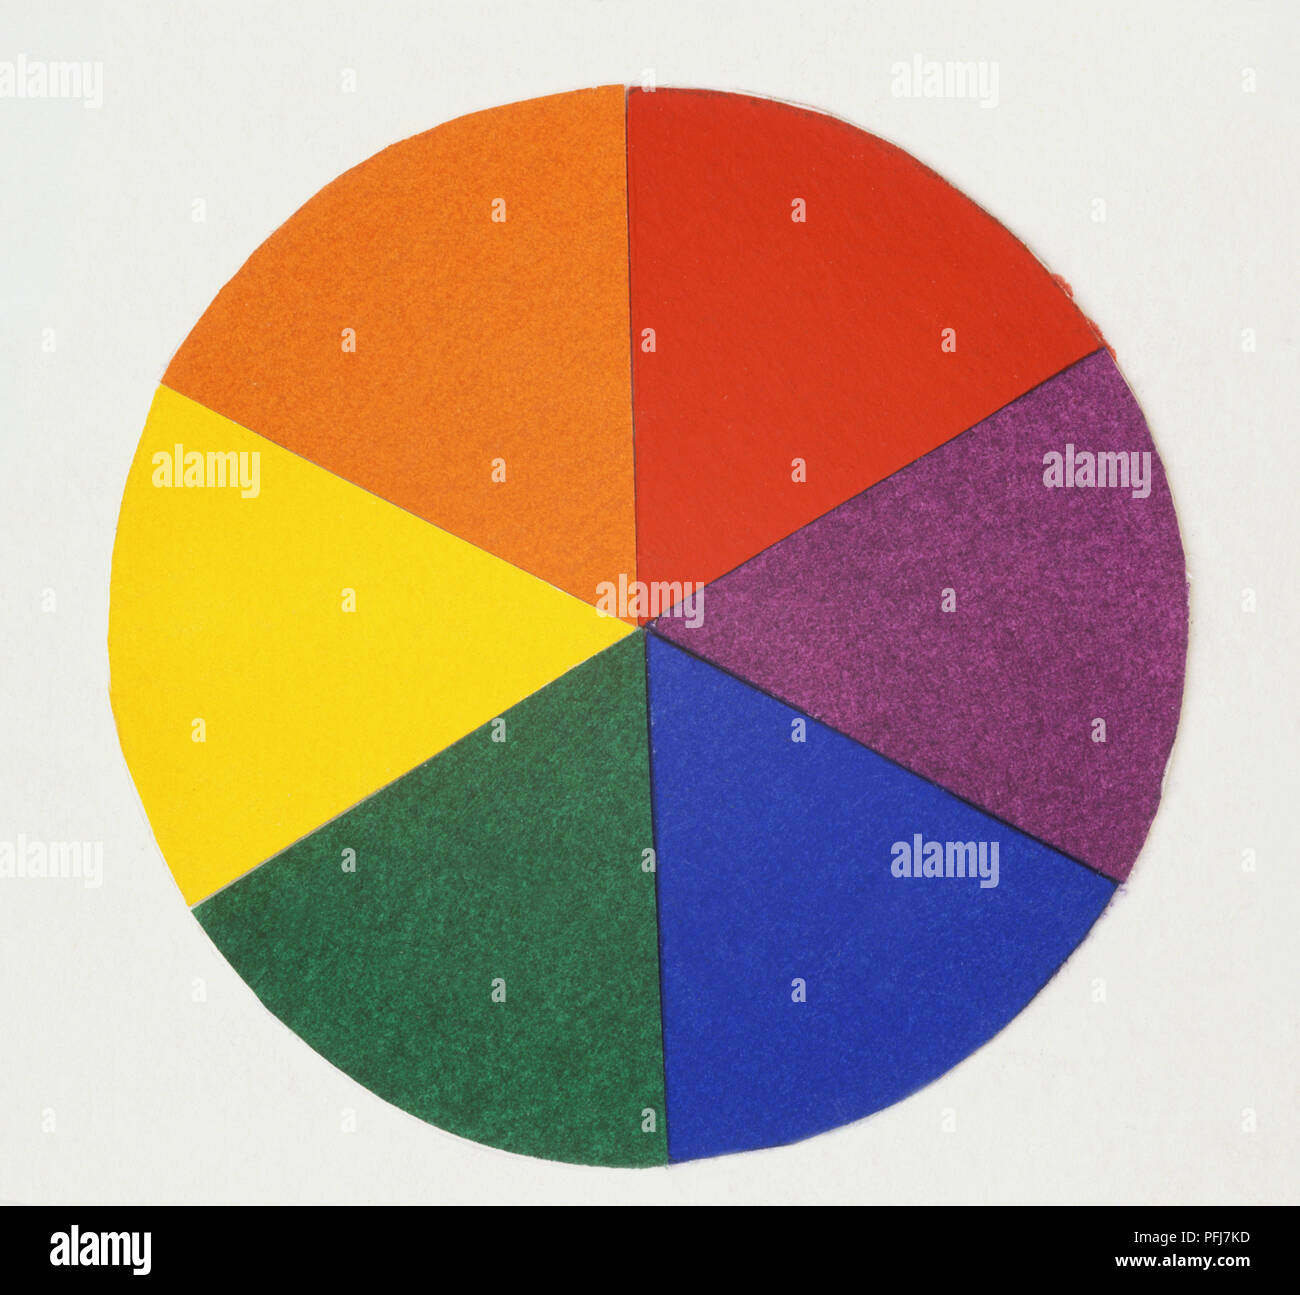 Círculo dividido en secciones de diferentes colores brillantes. Foto de stock